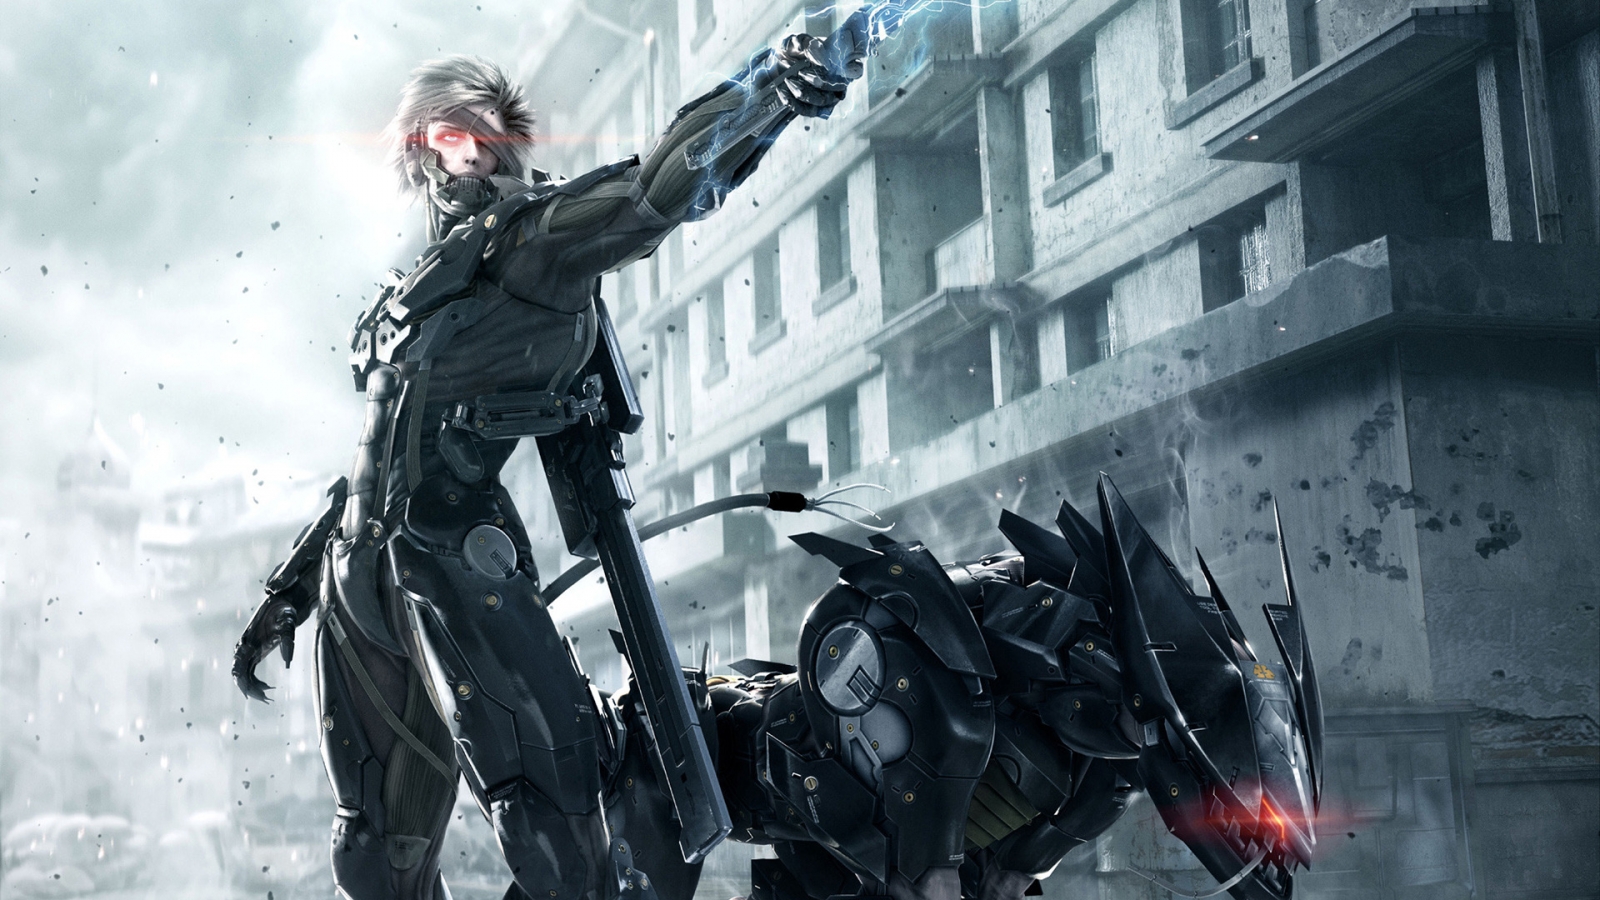 Metal Gear Rising Revengeance for 1600 x 900 HDTV resolution